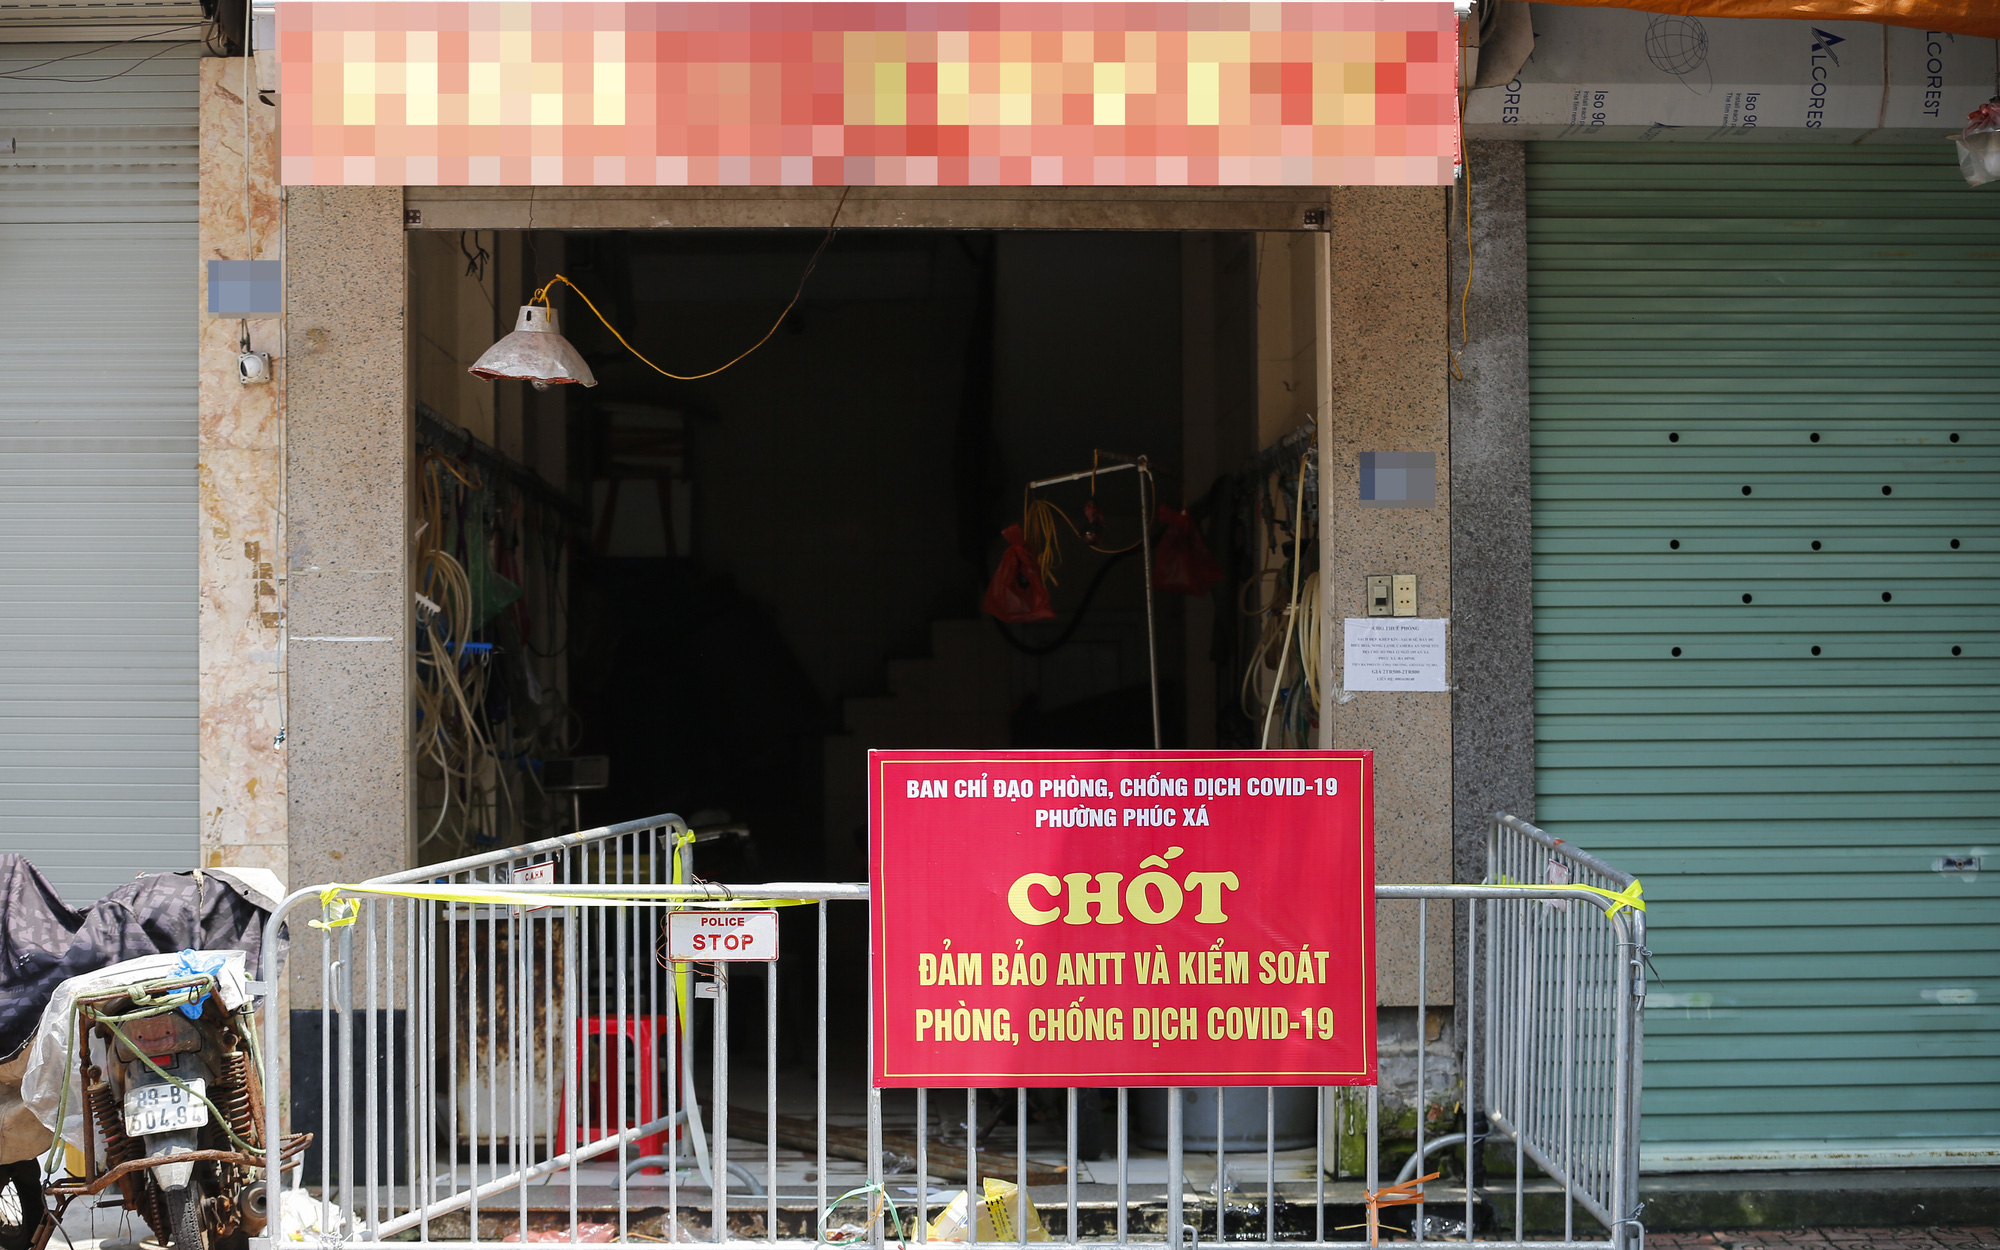 Hà Nội: Cận cảnh nơi phát hiện một người nhiễm Covid-19 tại chợ Long Biên